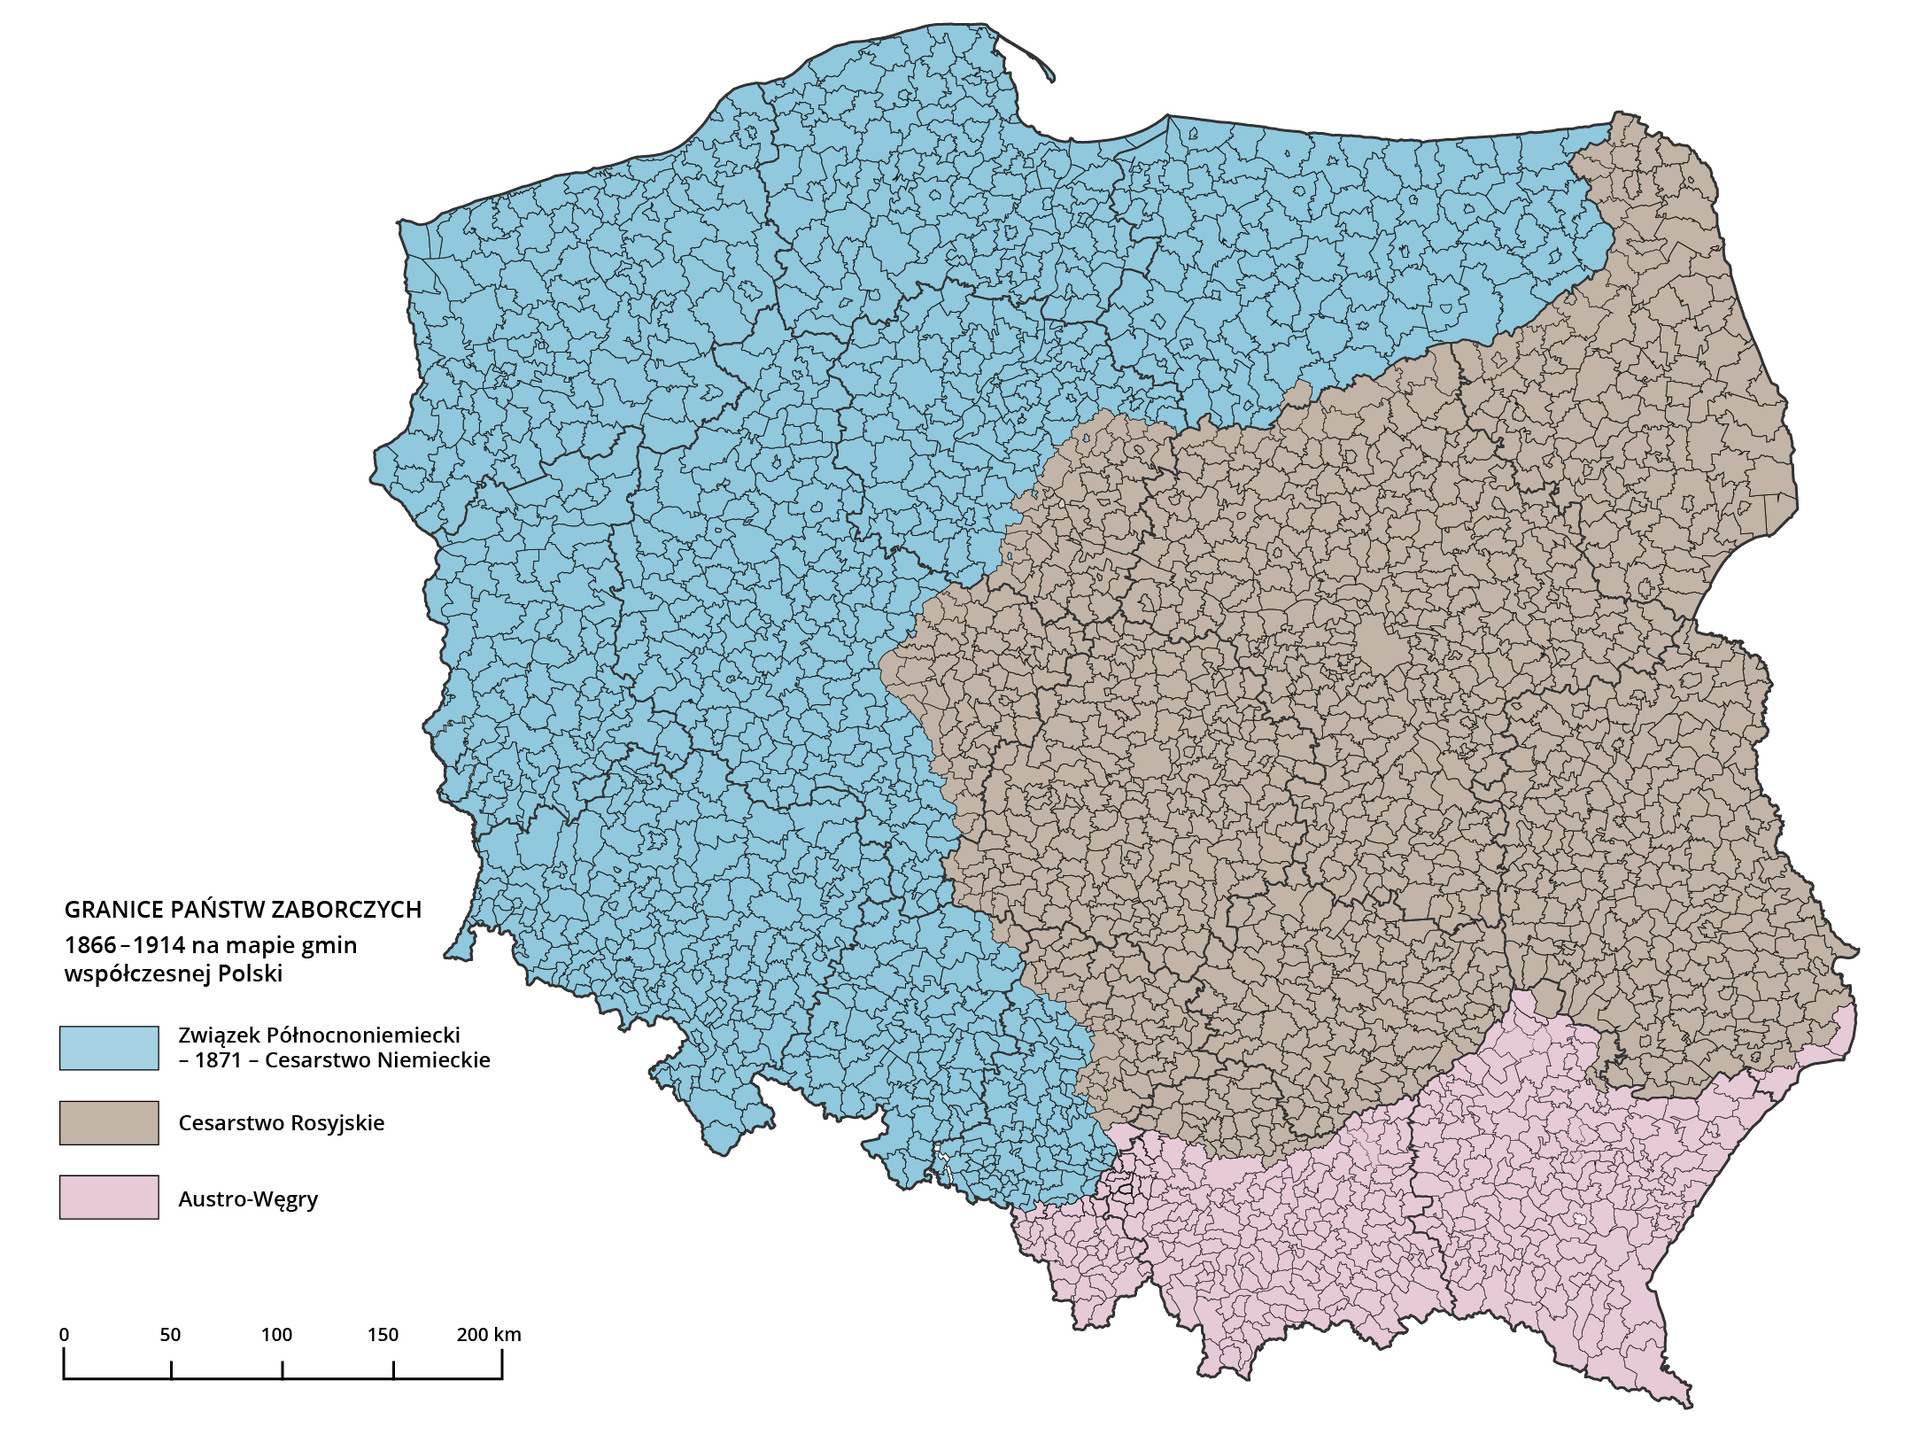 Mapa Polski przedstawia granice państw zaborczych w latach 1866-1914. Kolorem niebieskim jest zaznaczony Związek Północnoniemiecki i obejmuje całą północno-zachodnią część kraju. Kolorem szarym jest zaznaczone Cesarstwo Rosyjskie i obejmuje środkowo-wschodnią część kraju. Kolorem jasnoróżowym są zaznaczone Austro-Węgry - obejmują one południe kraju.